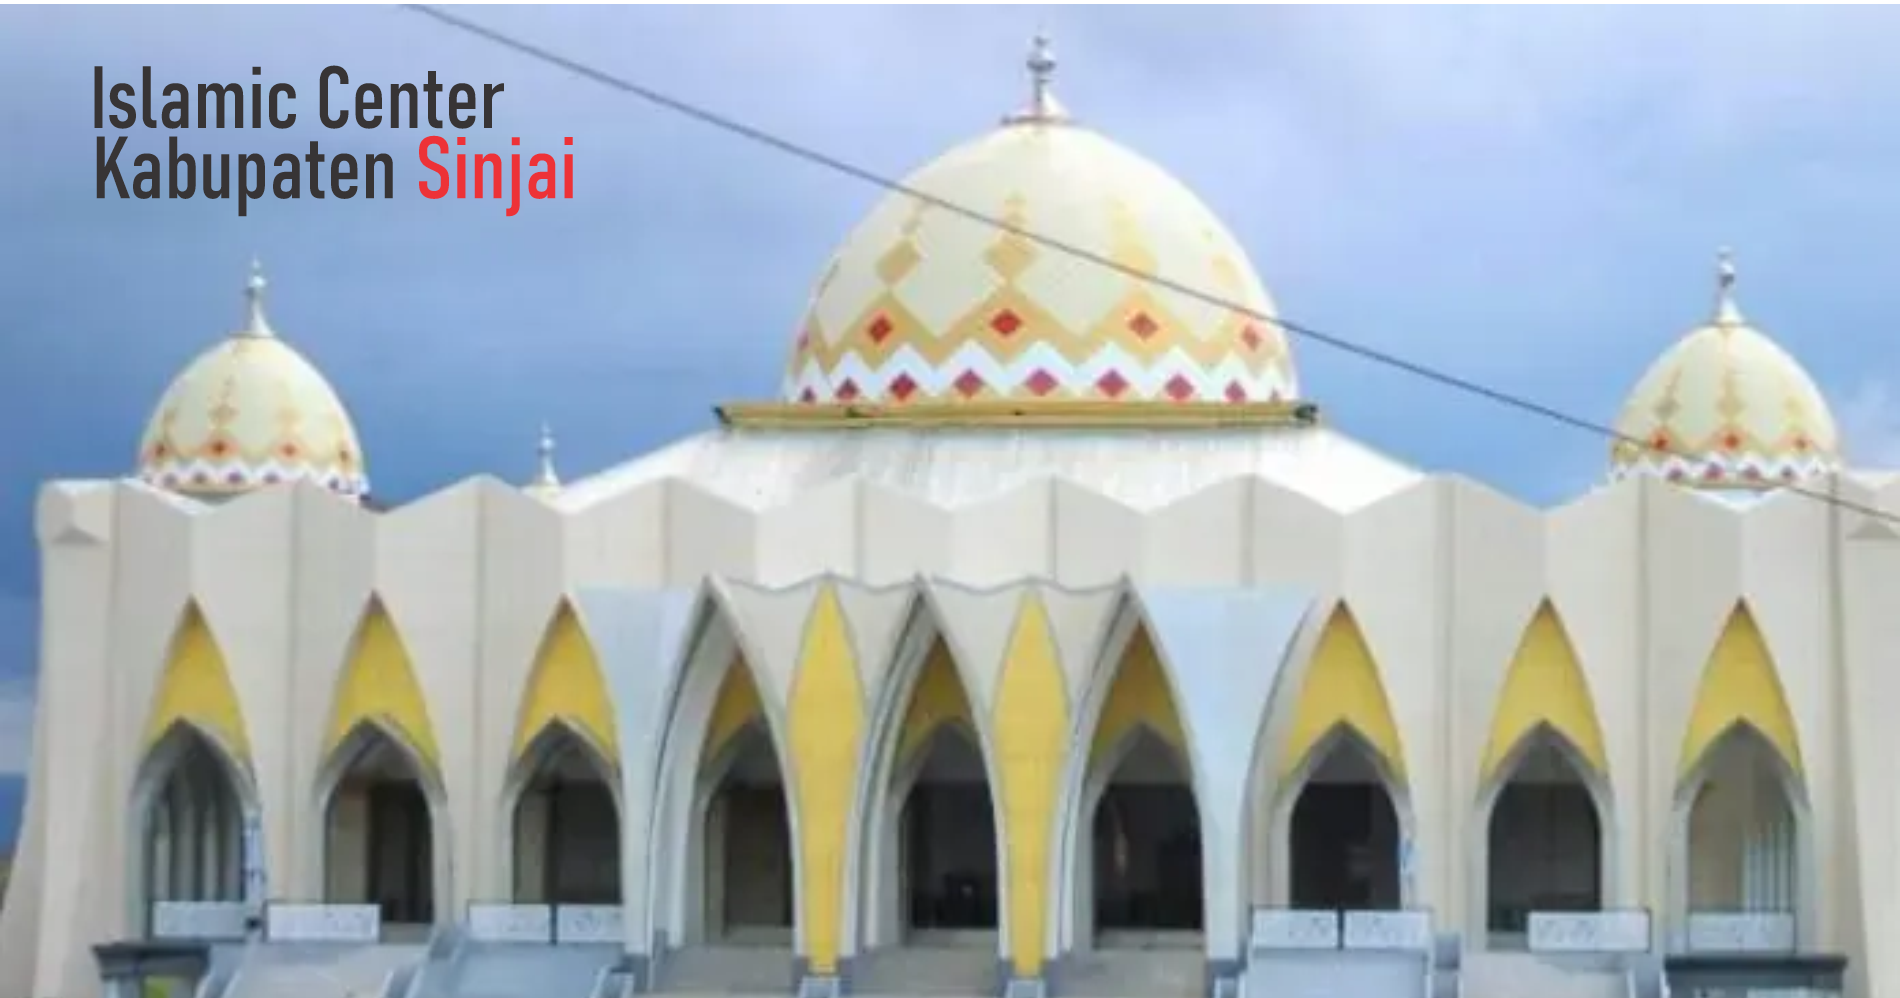 Masjid Islamic Center Kabupaten Sinjai